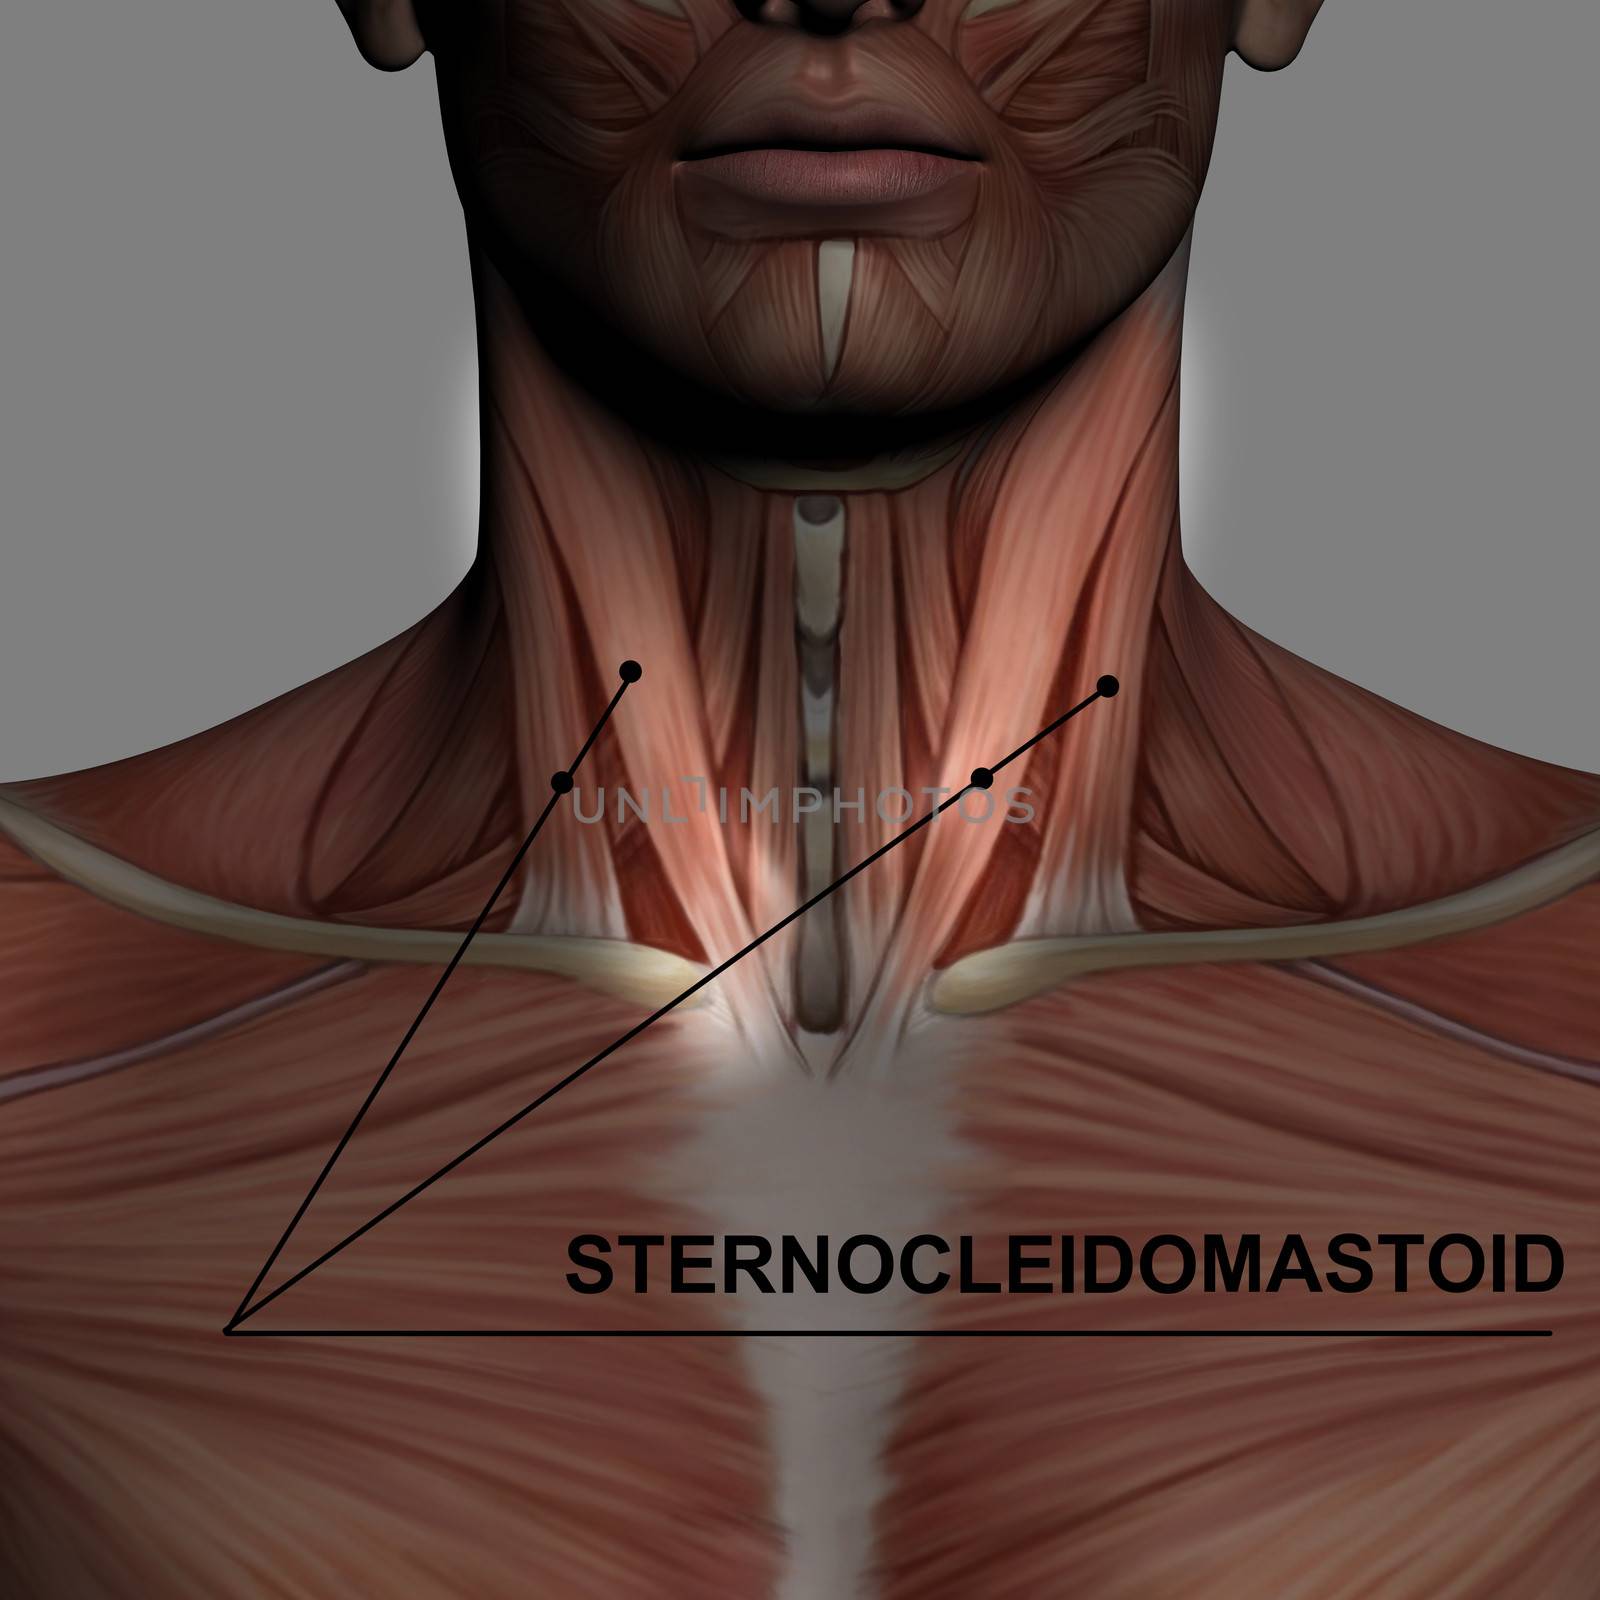 sternocleidomastoid by vitanovski